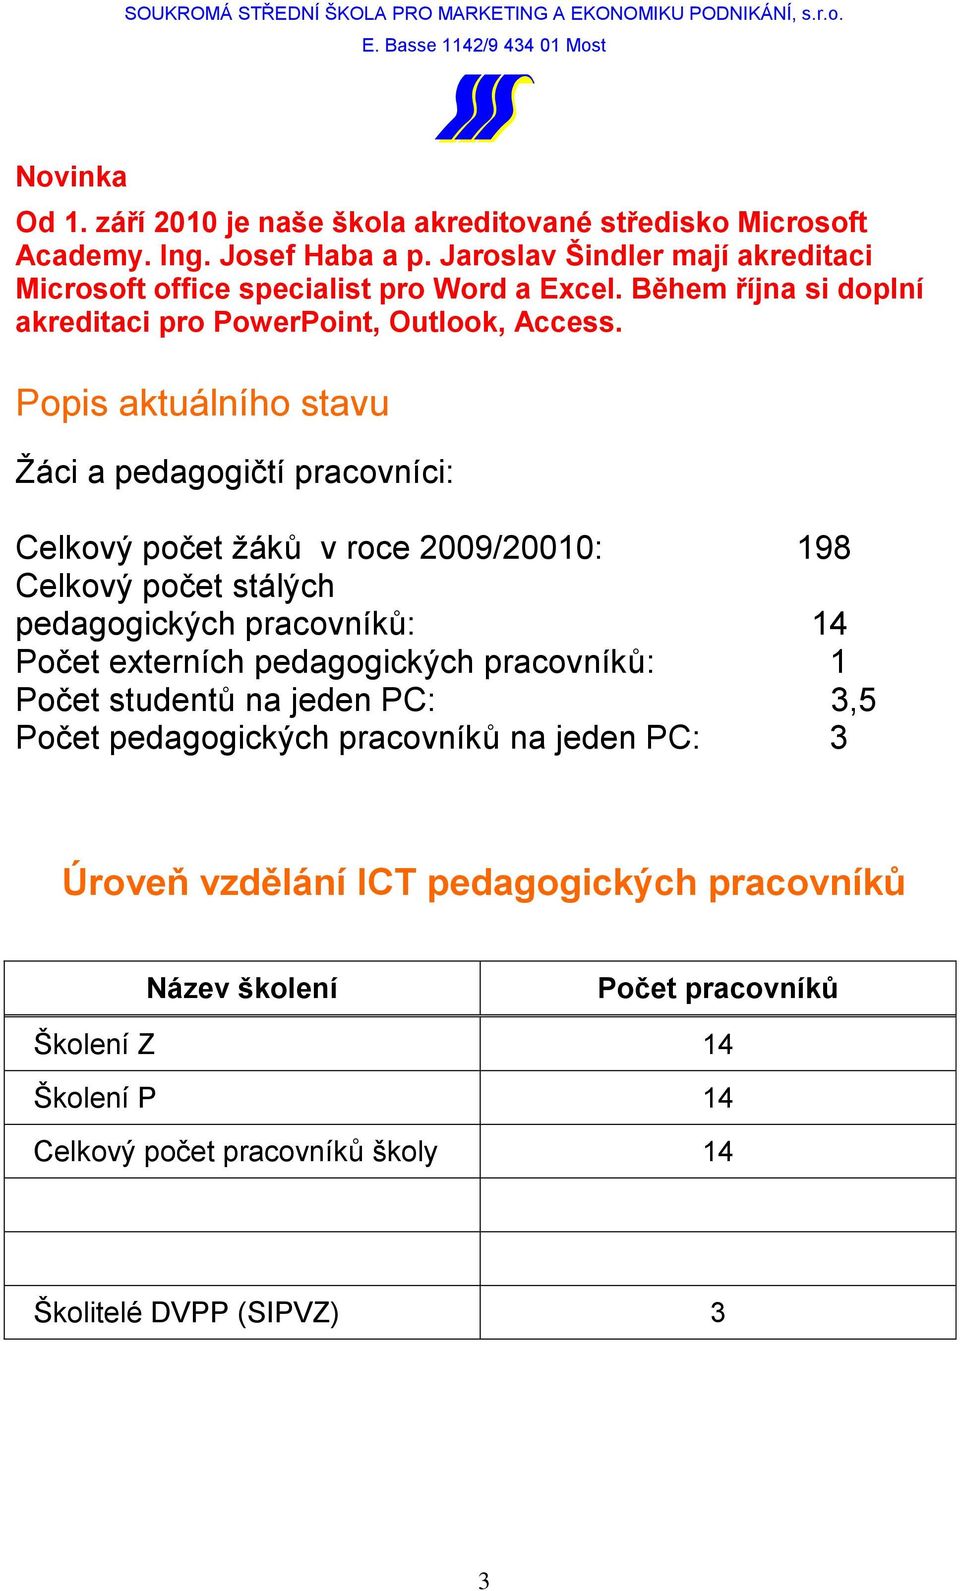 Popis aktuálního stavu Ţáci a pedagogičtí pracovníci: Celkový počet ţáků v roce 2009/20010: 198 Celkový počet stálých pedagogických pracovníků: 14 Počet externích